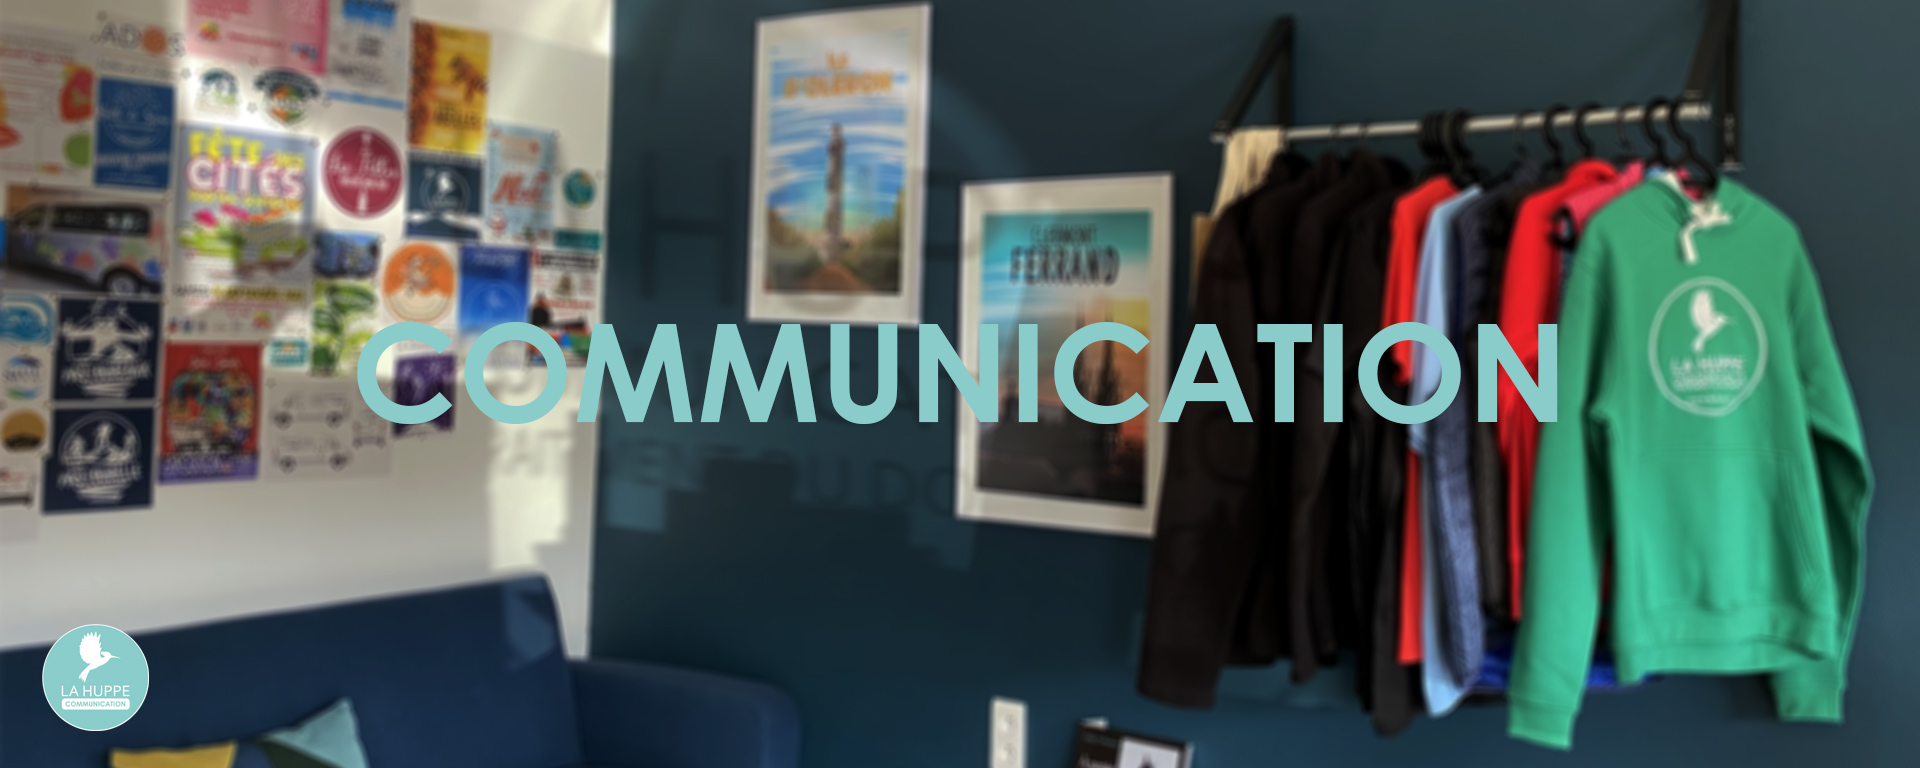 La Huppe communication & traitement du document service communication - conception & création de supports de communication pour les entreprises et les particuliers